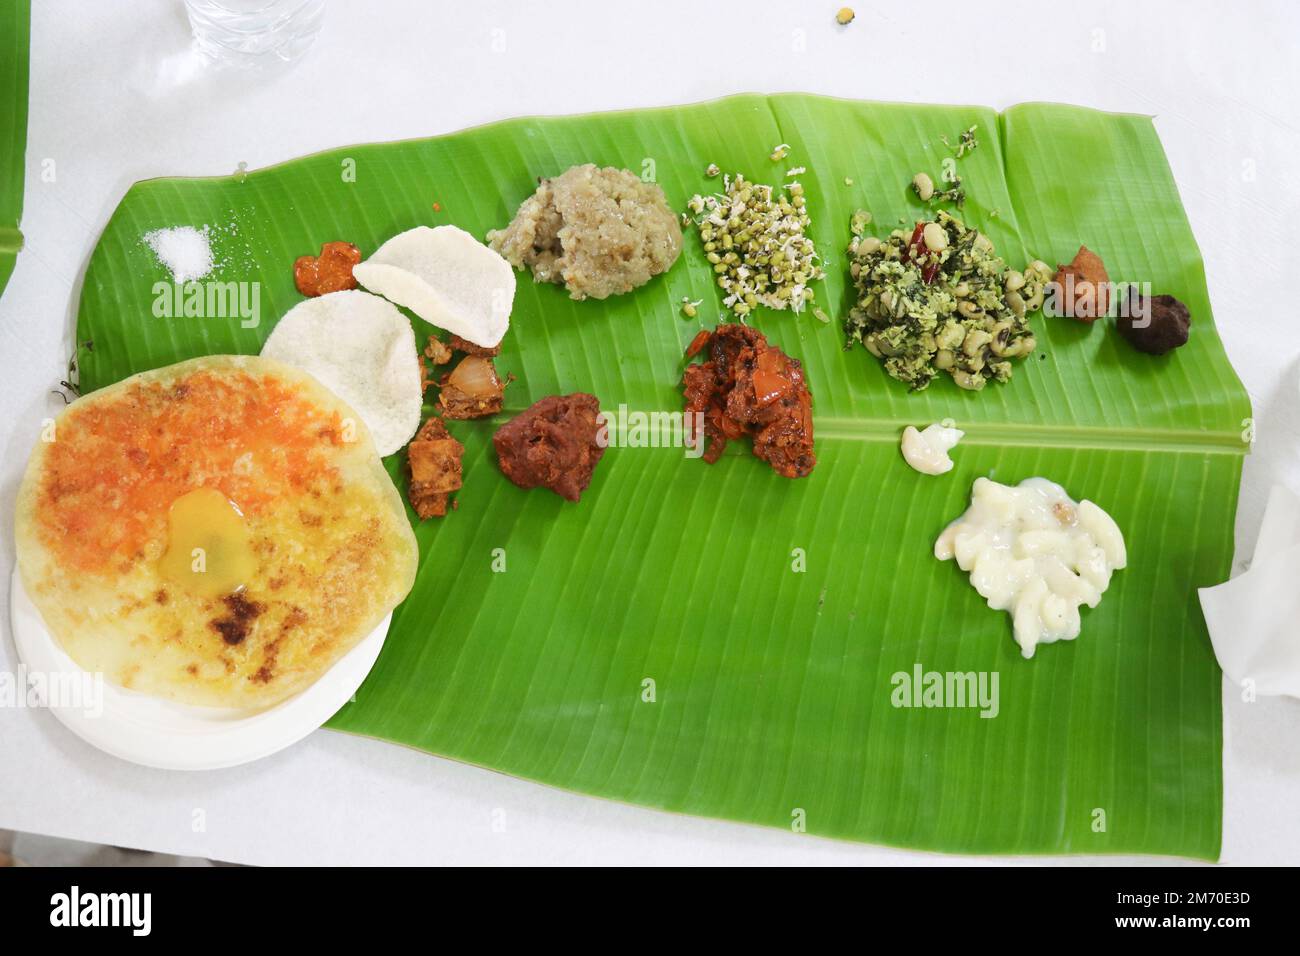 Repas sud-indiens servis dans une feuille de banane. Entrées végétariennes avec différents types de plats délicieux comme des obbattu et des salades Banque D'Images